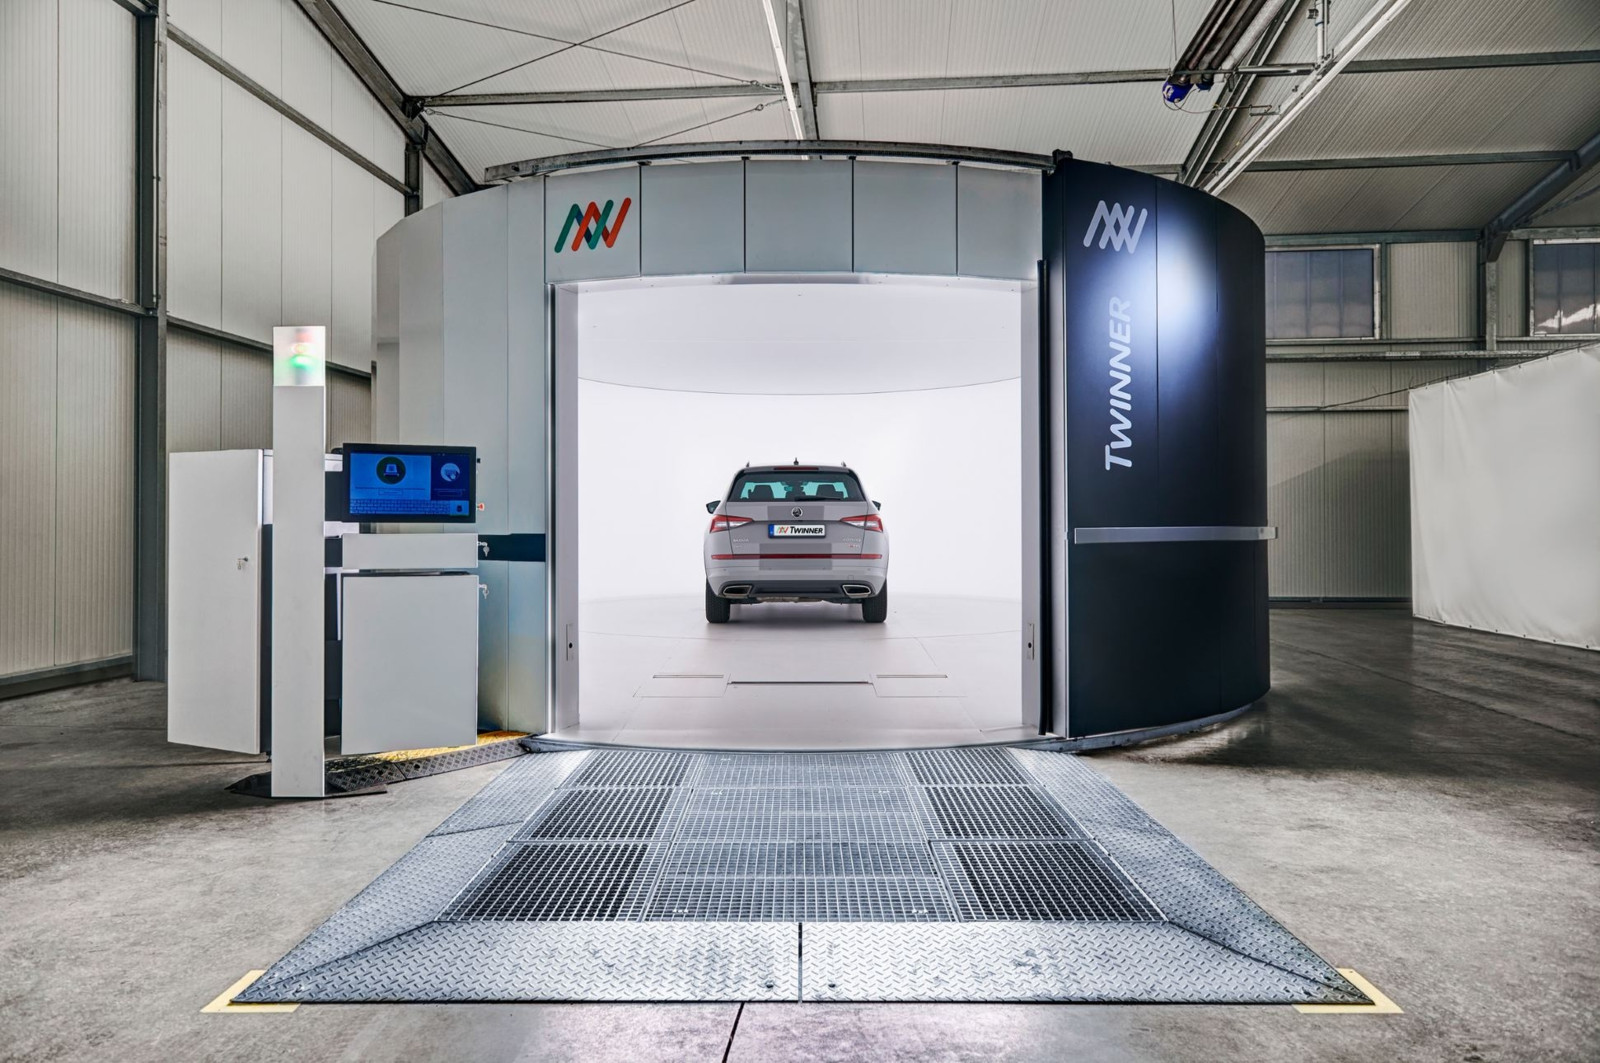 Die Twinner GmbH bietet seit 2017 Schadenscanner u.a. als Remarketing-Hilfe an. Im Bild ist ein entsprechender „Twinner-Space“, der 2021 am Renault-Standort in Flins-sur-Seine eingeweiht wurde.